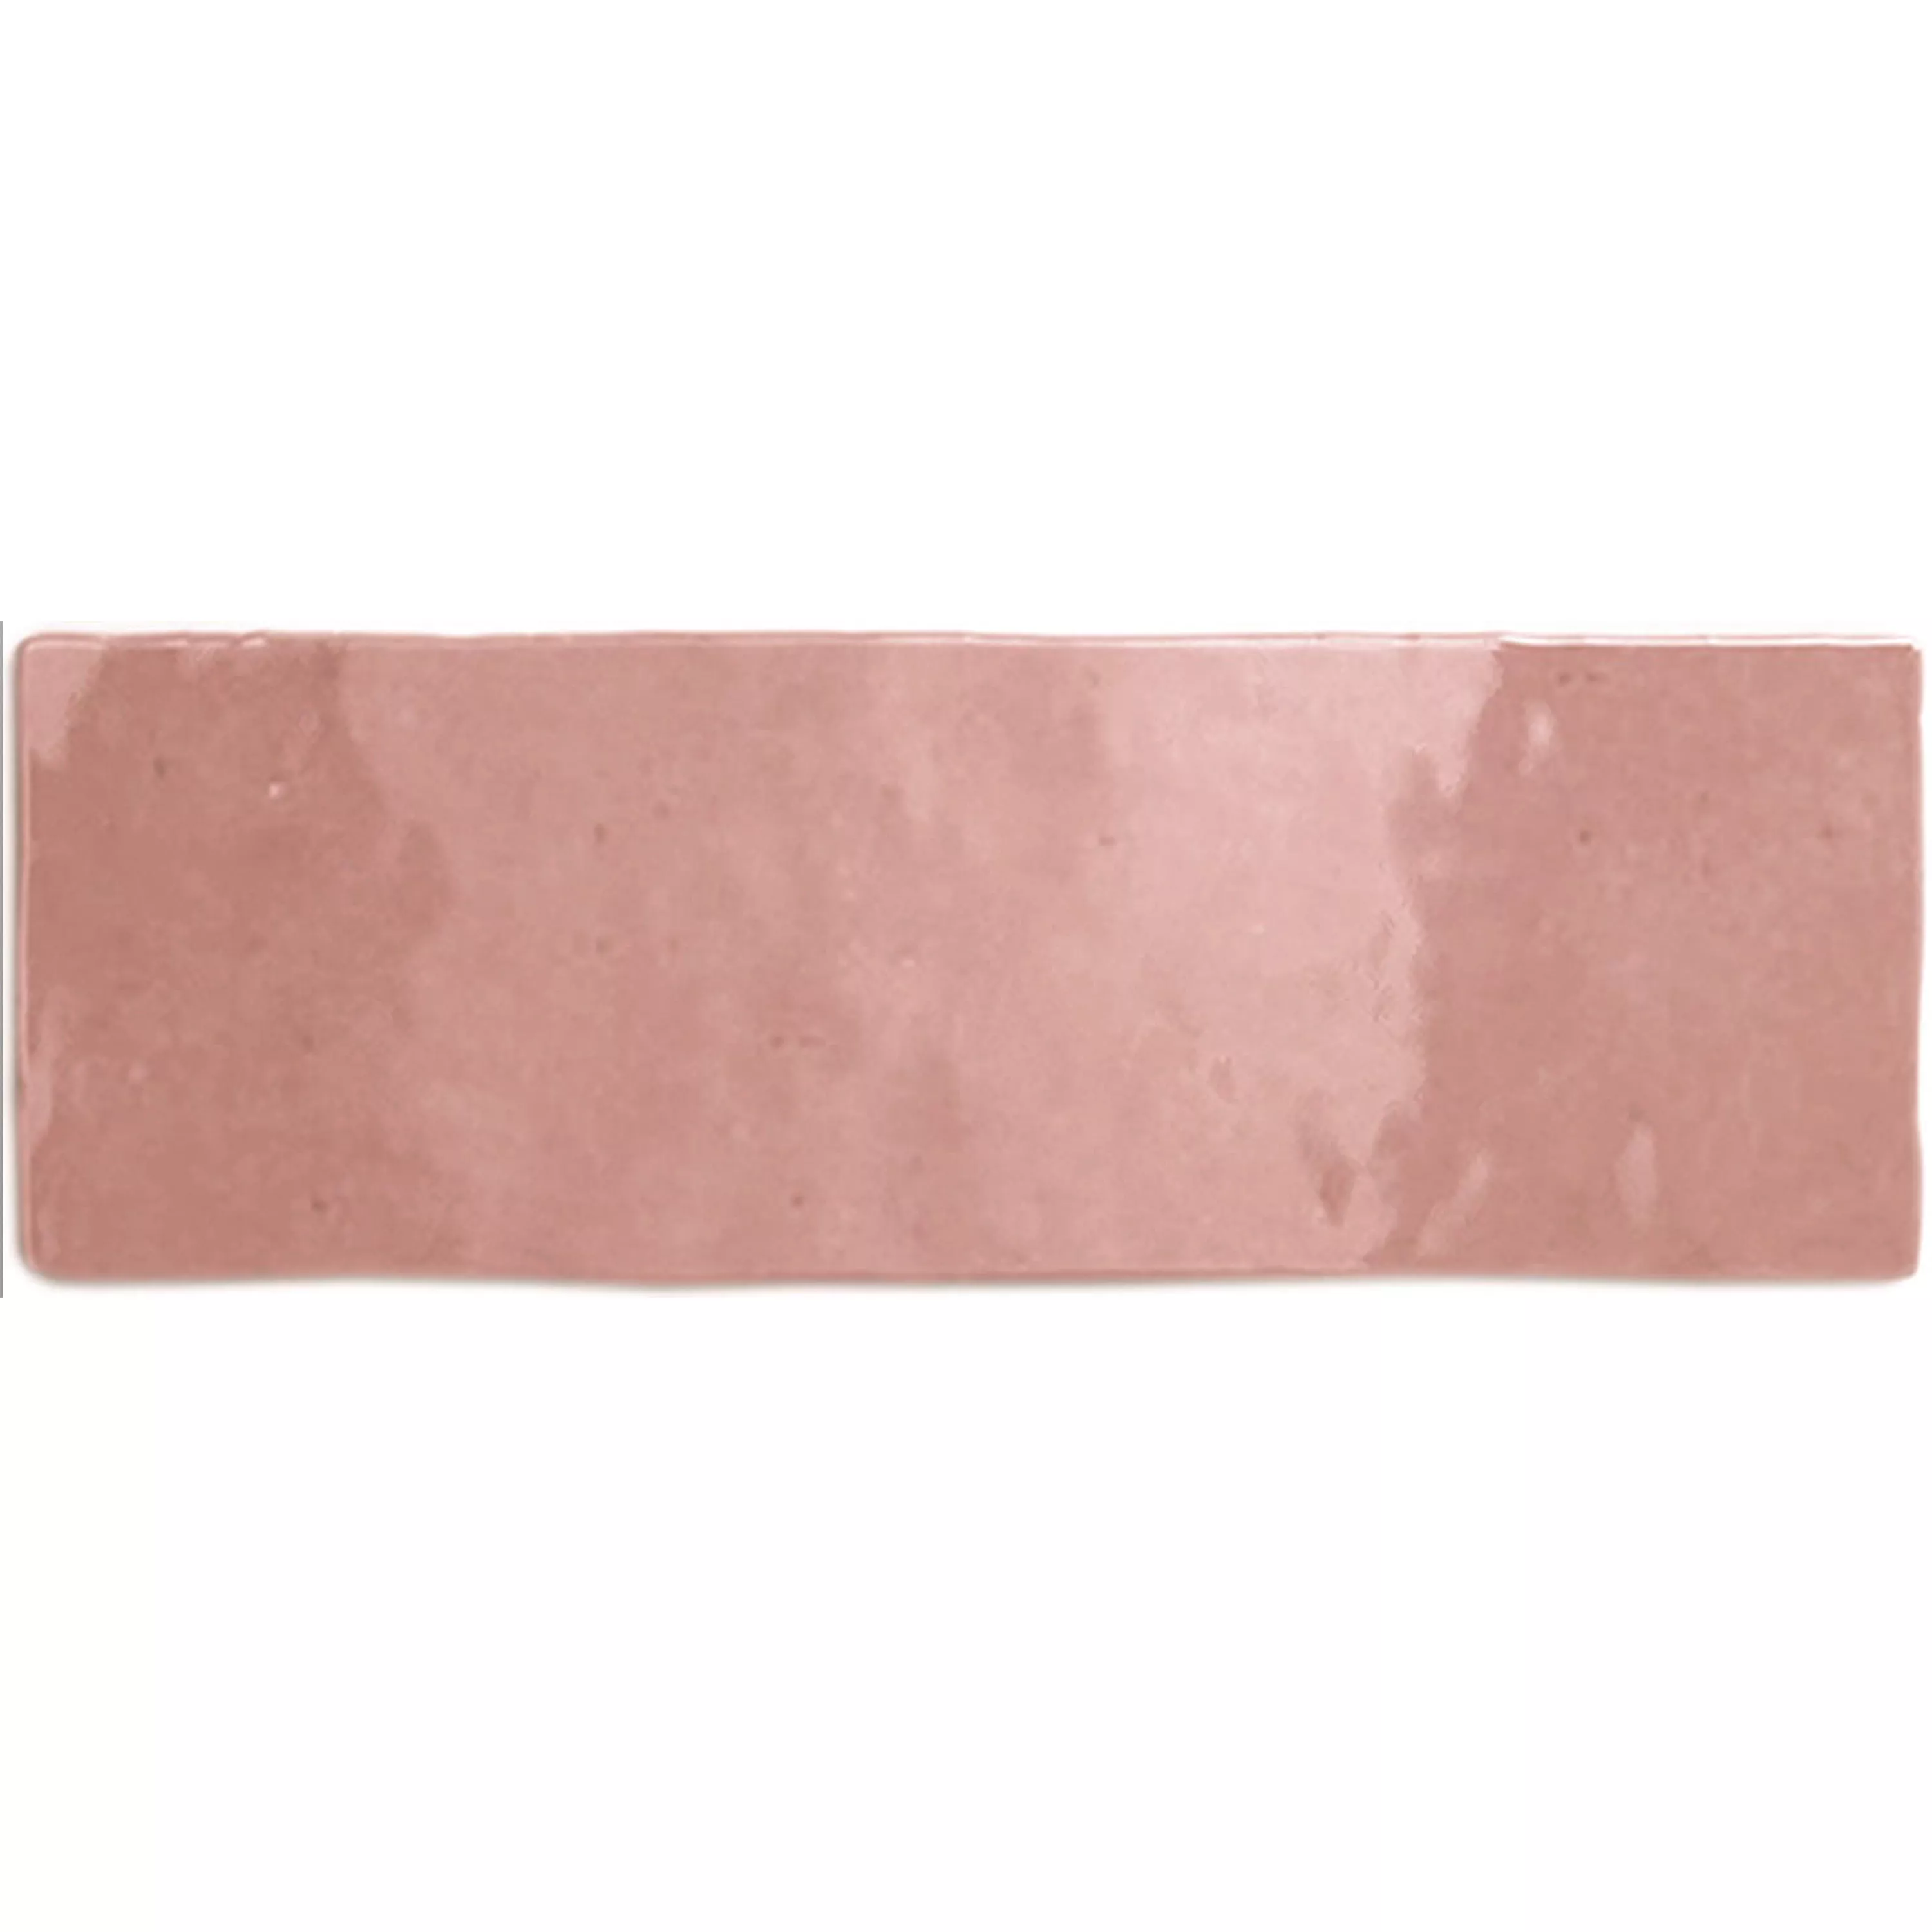 Πλακάκια Tοίχου Concord Κυματική Οπτική Ροζ 6,5x20cm